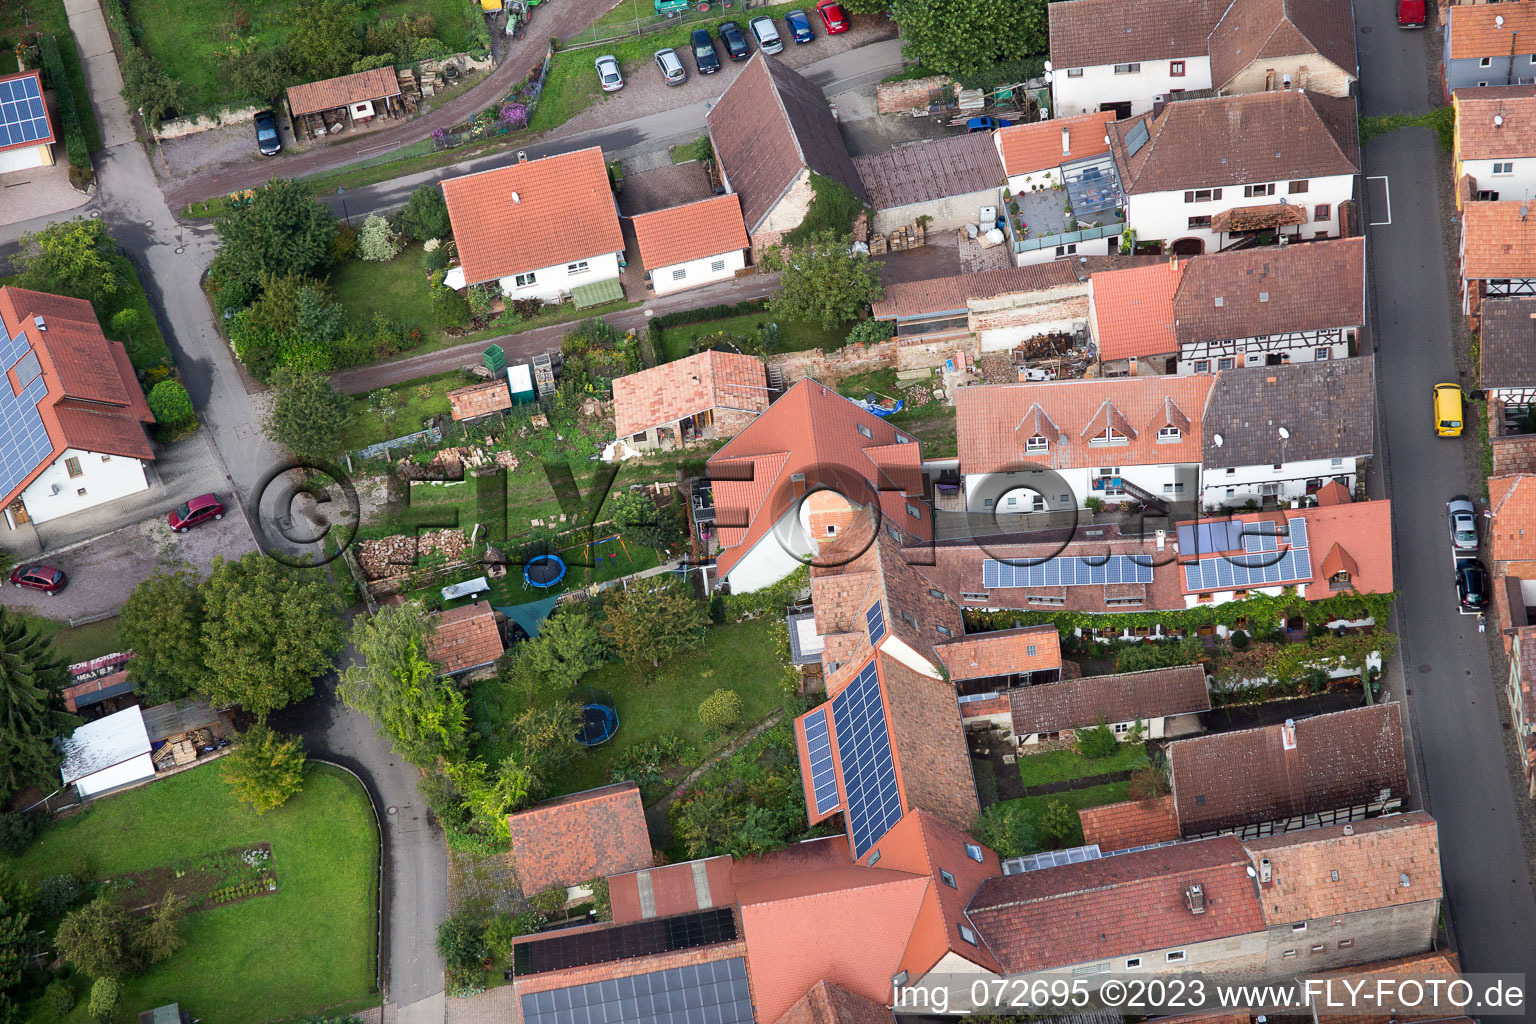 Village view in the district Heuchelheim in Heuchelheim-Klingen in the state Rhineland-Palatinate out of the air